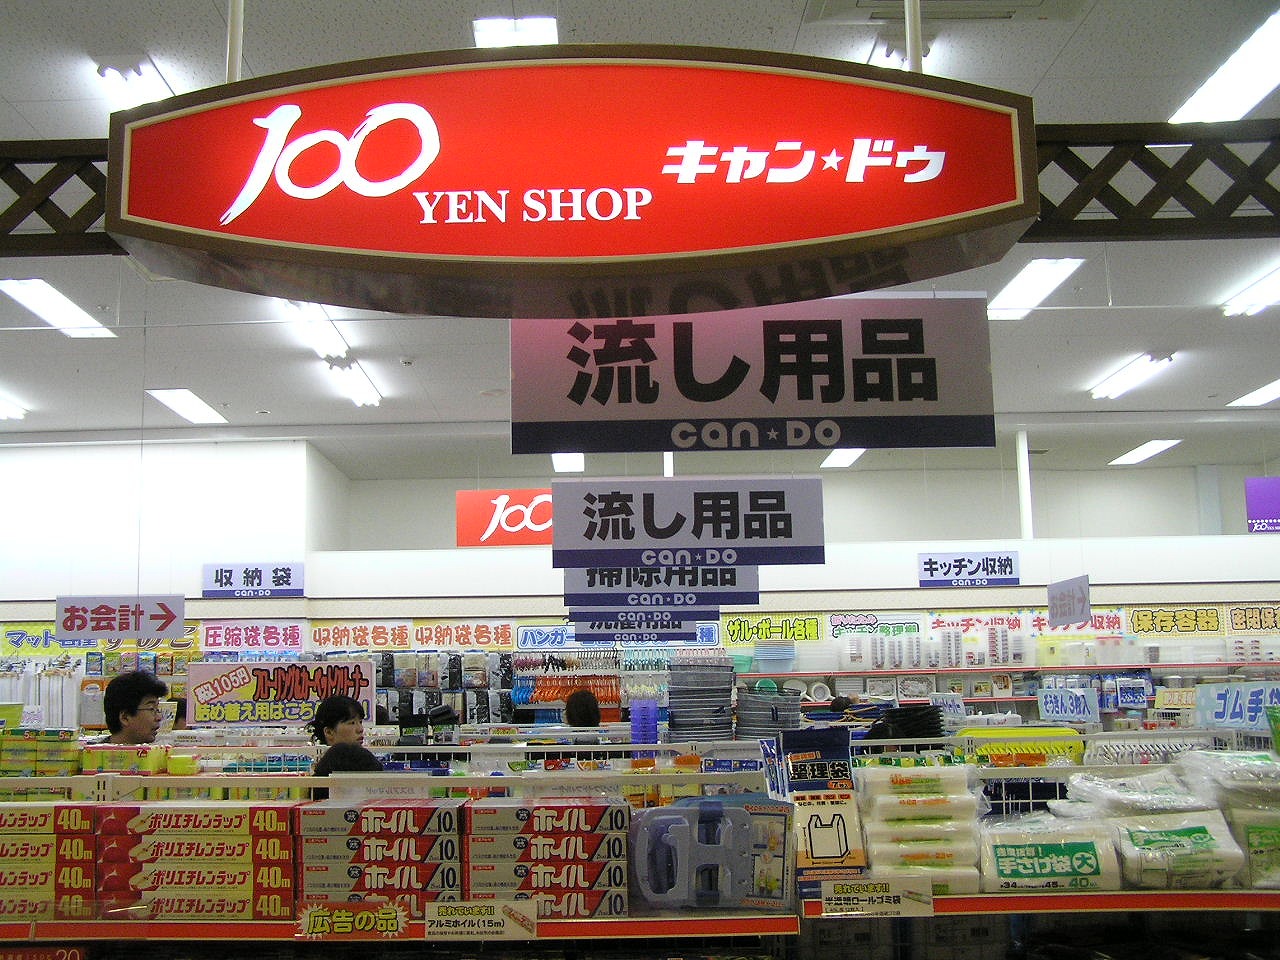 Cando shop 100 Yen